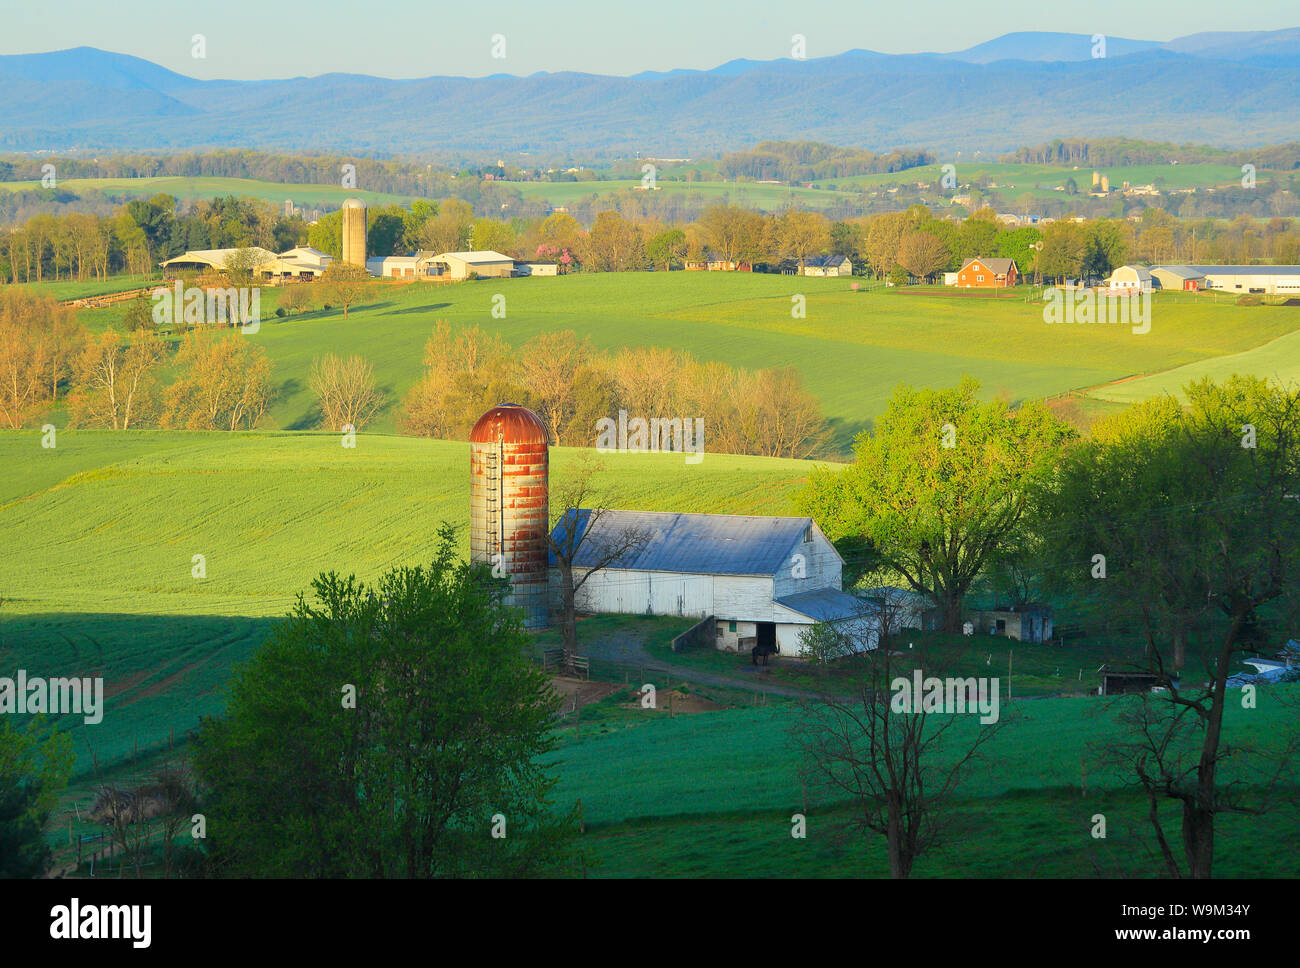 Ferme mennonite, Dayton, vallée de Shenandoah, en Virginie, USA Banque D'Images